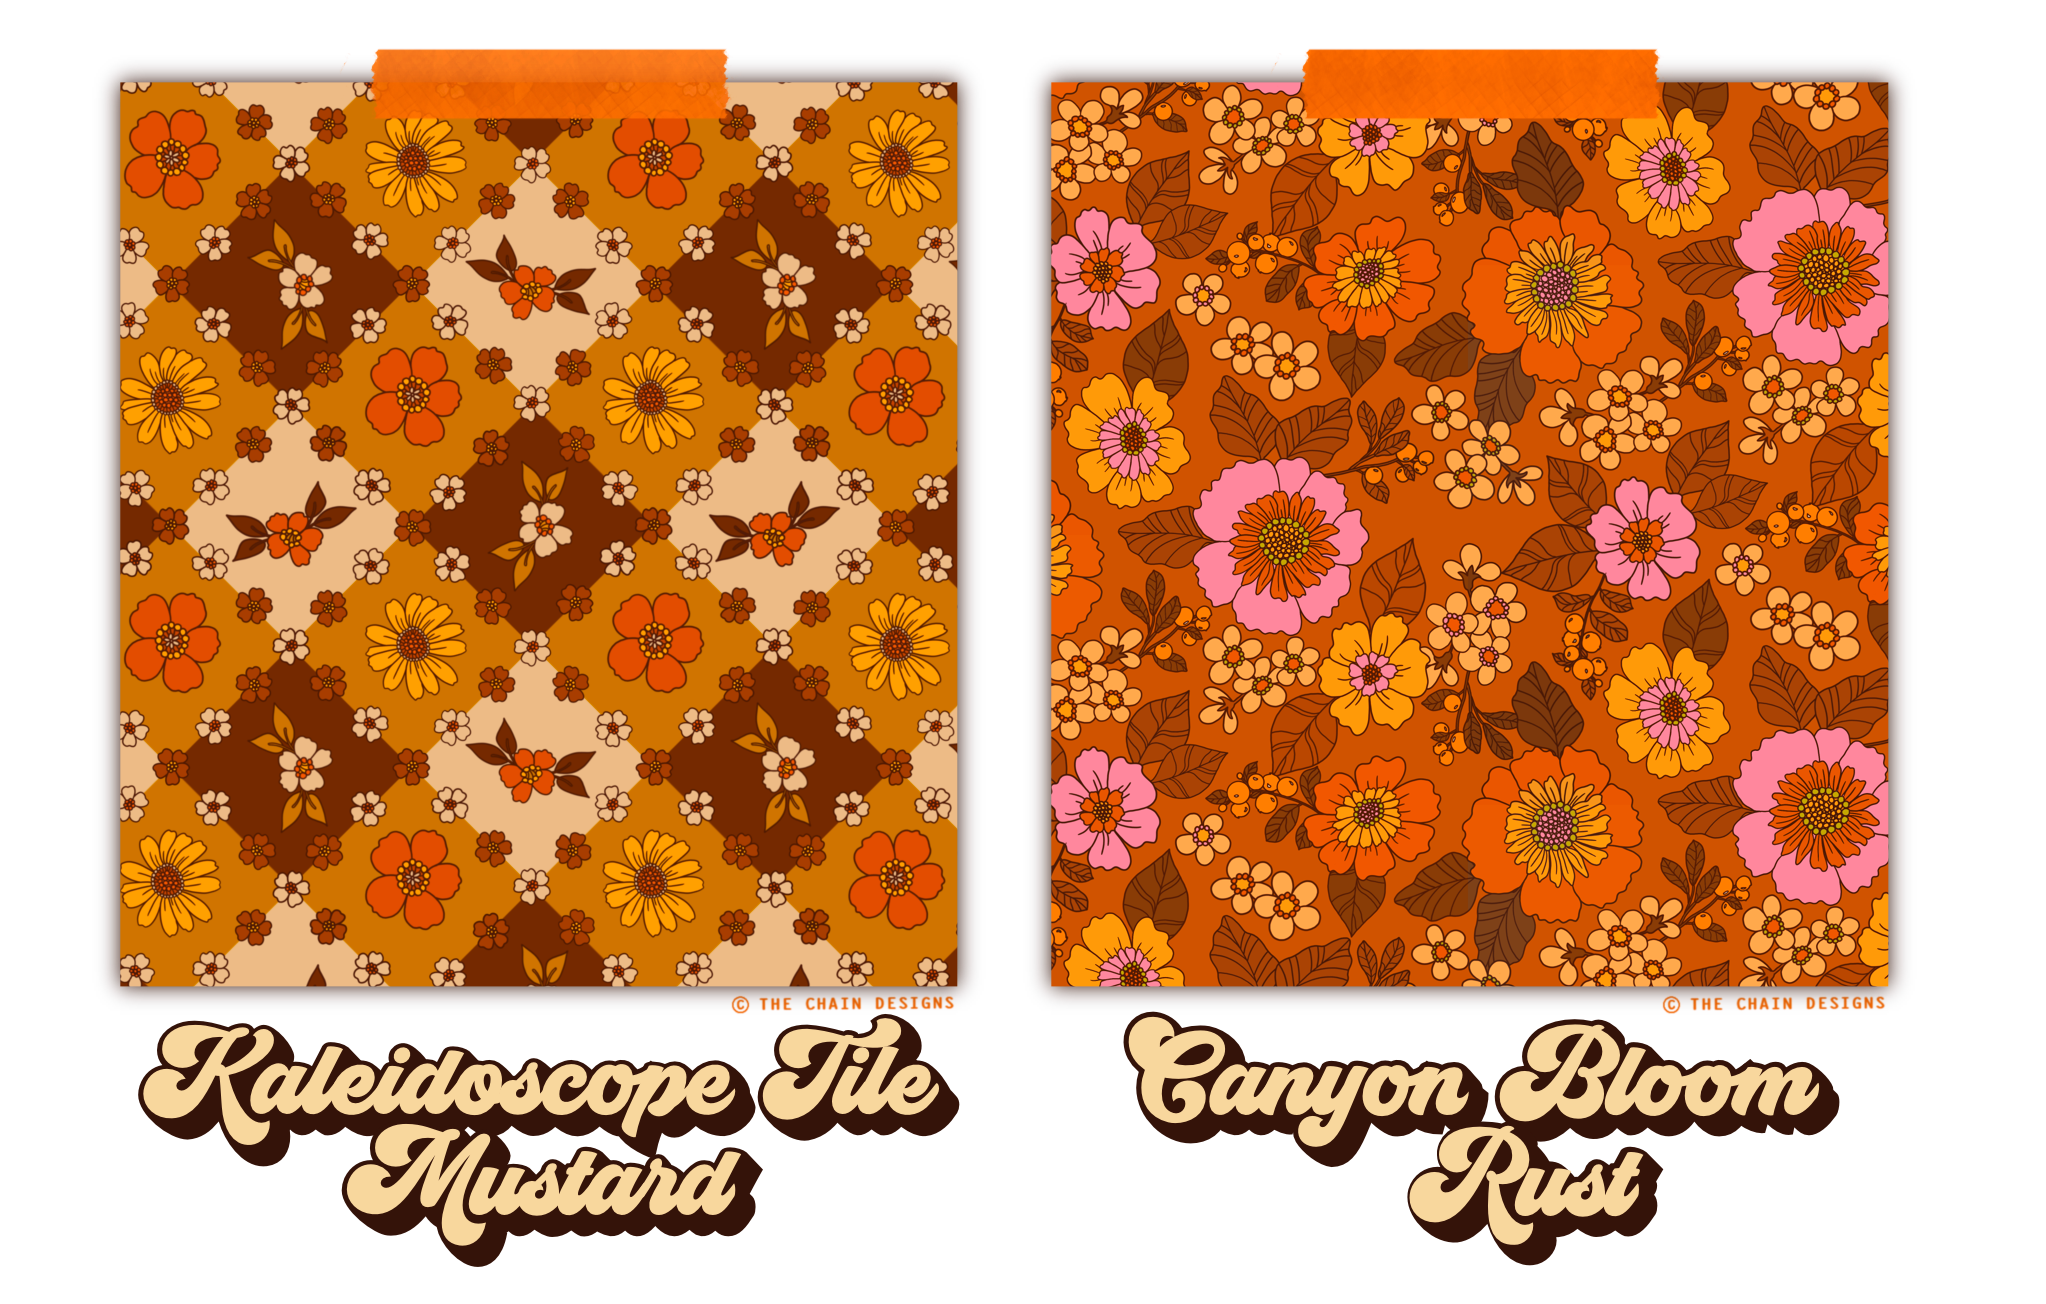 Kalidescope Tile Mustard / Canyon Bloom Pink